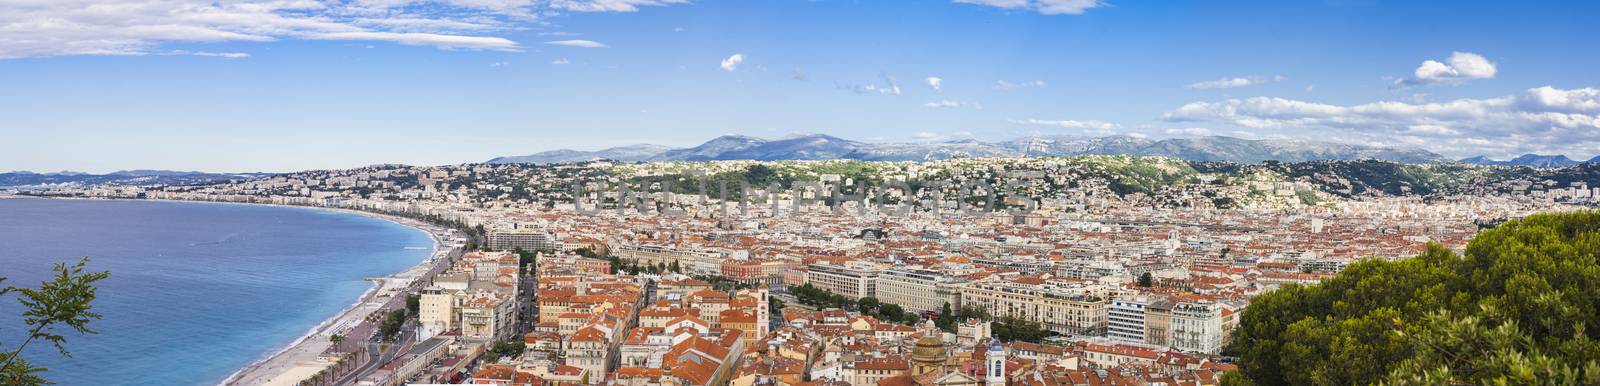 Nice city, Nizza panorama

